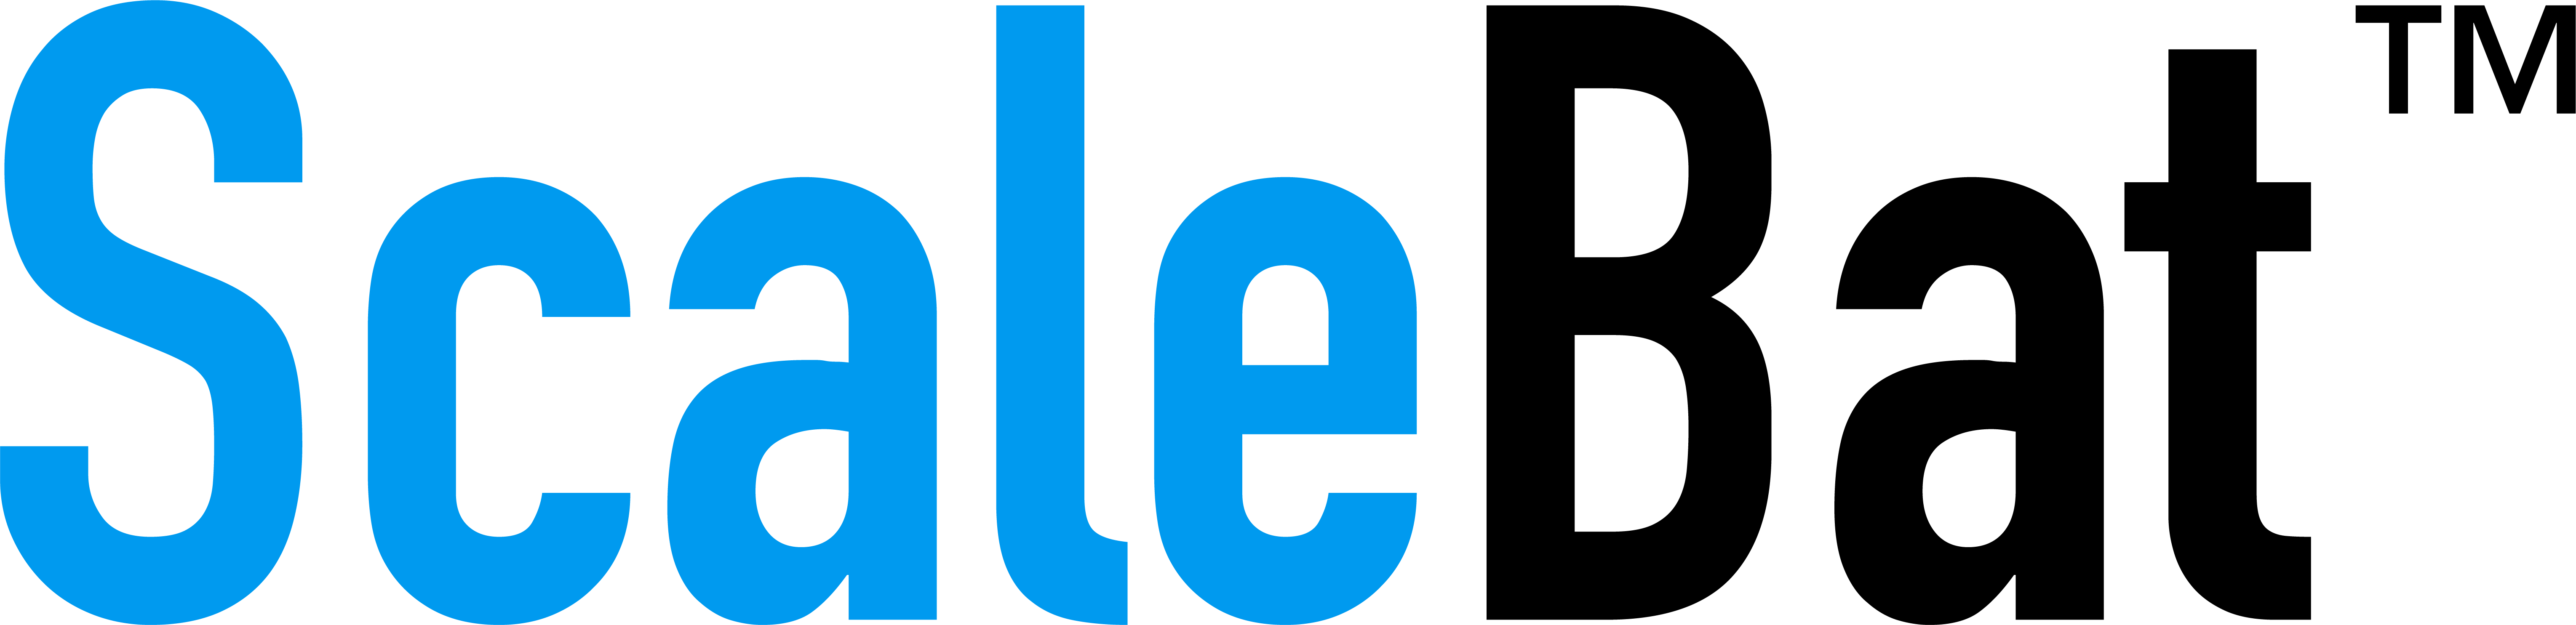 scalebat logo